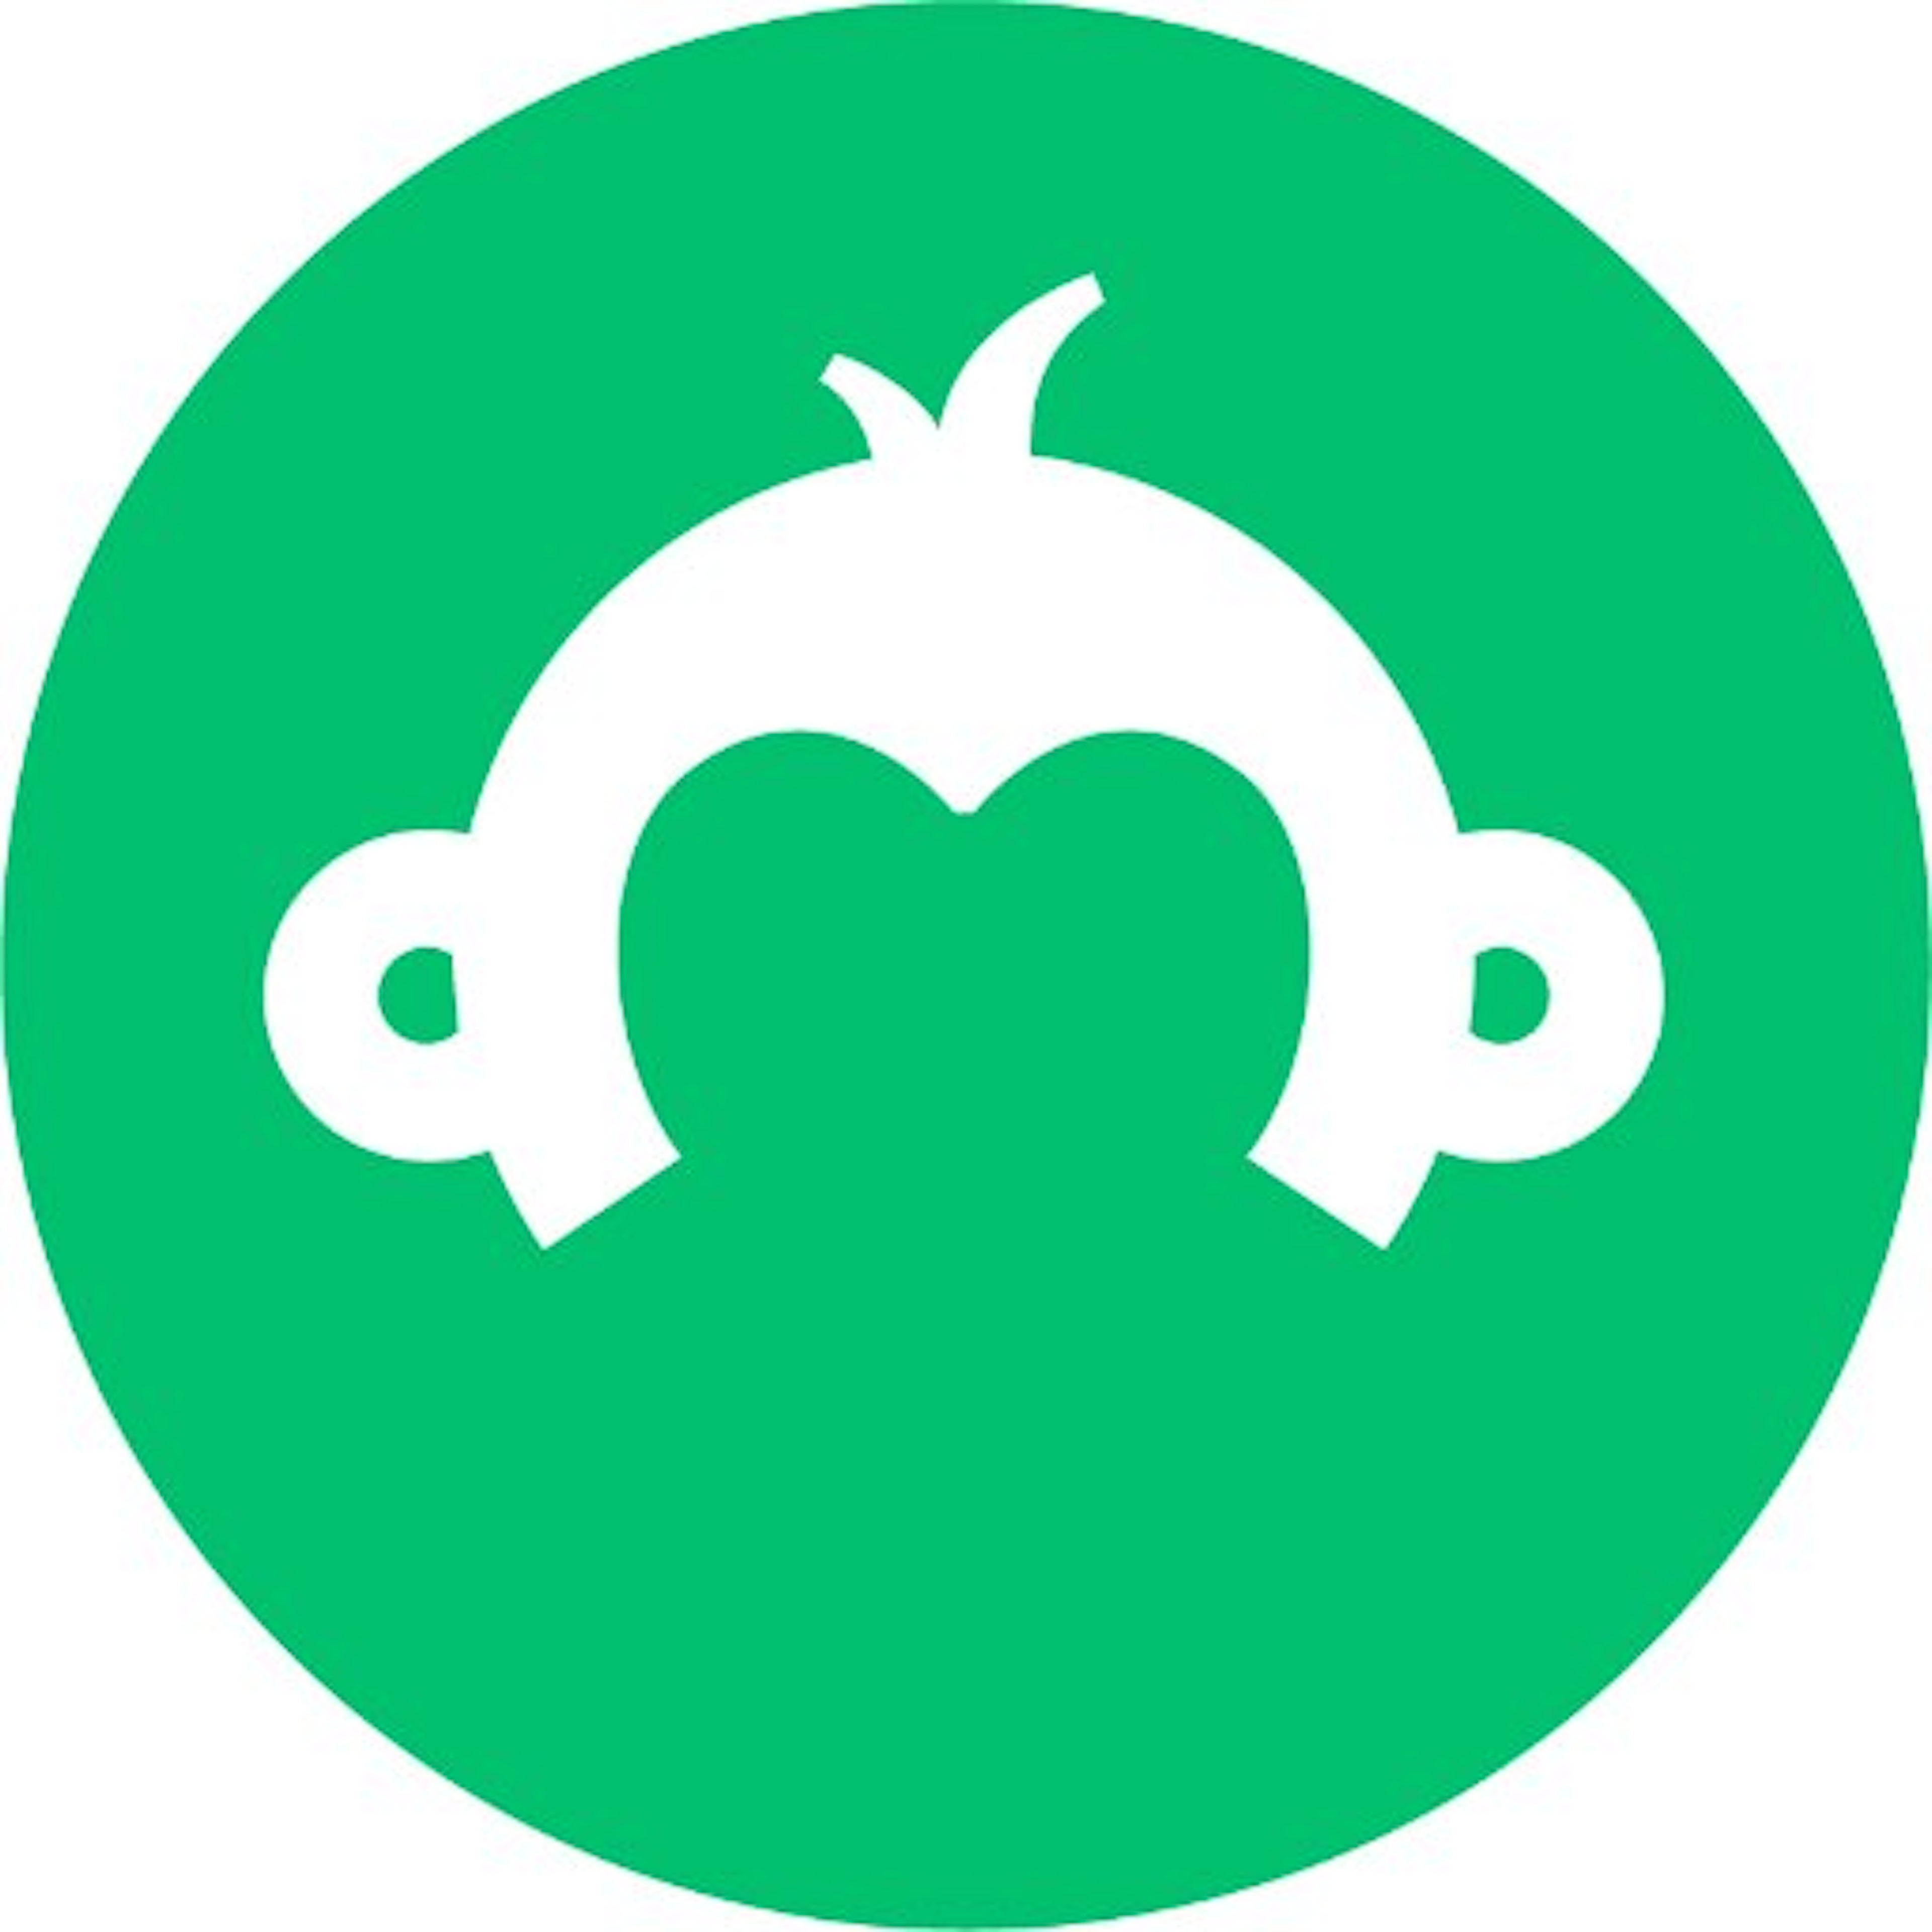 SurveyMonkey Apply Logo